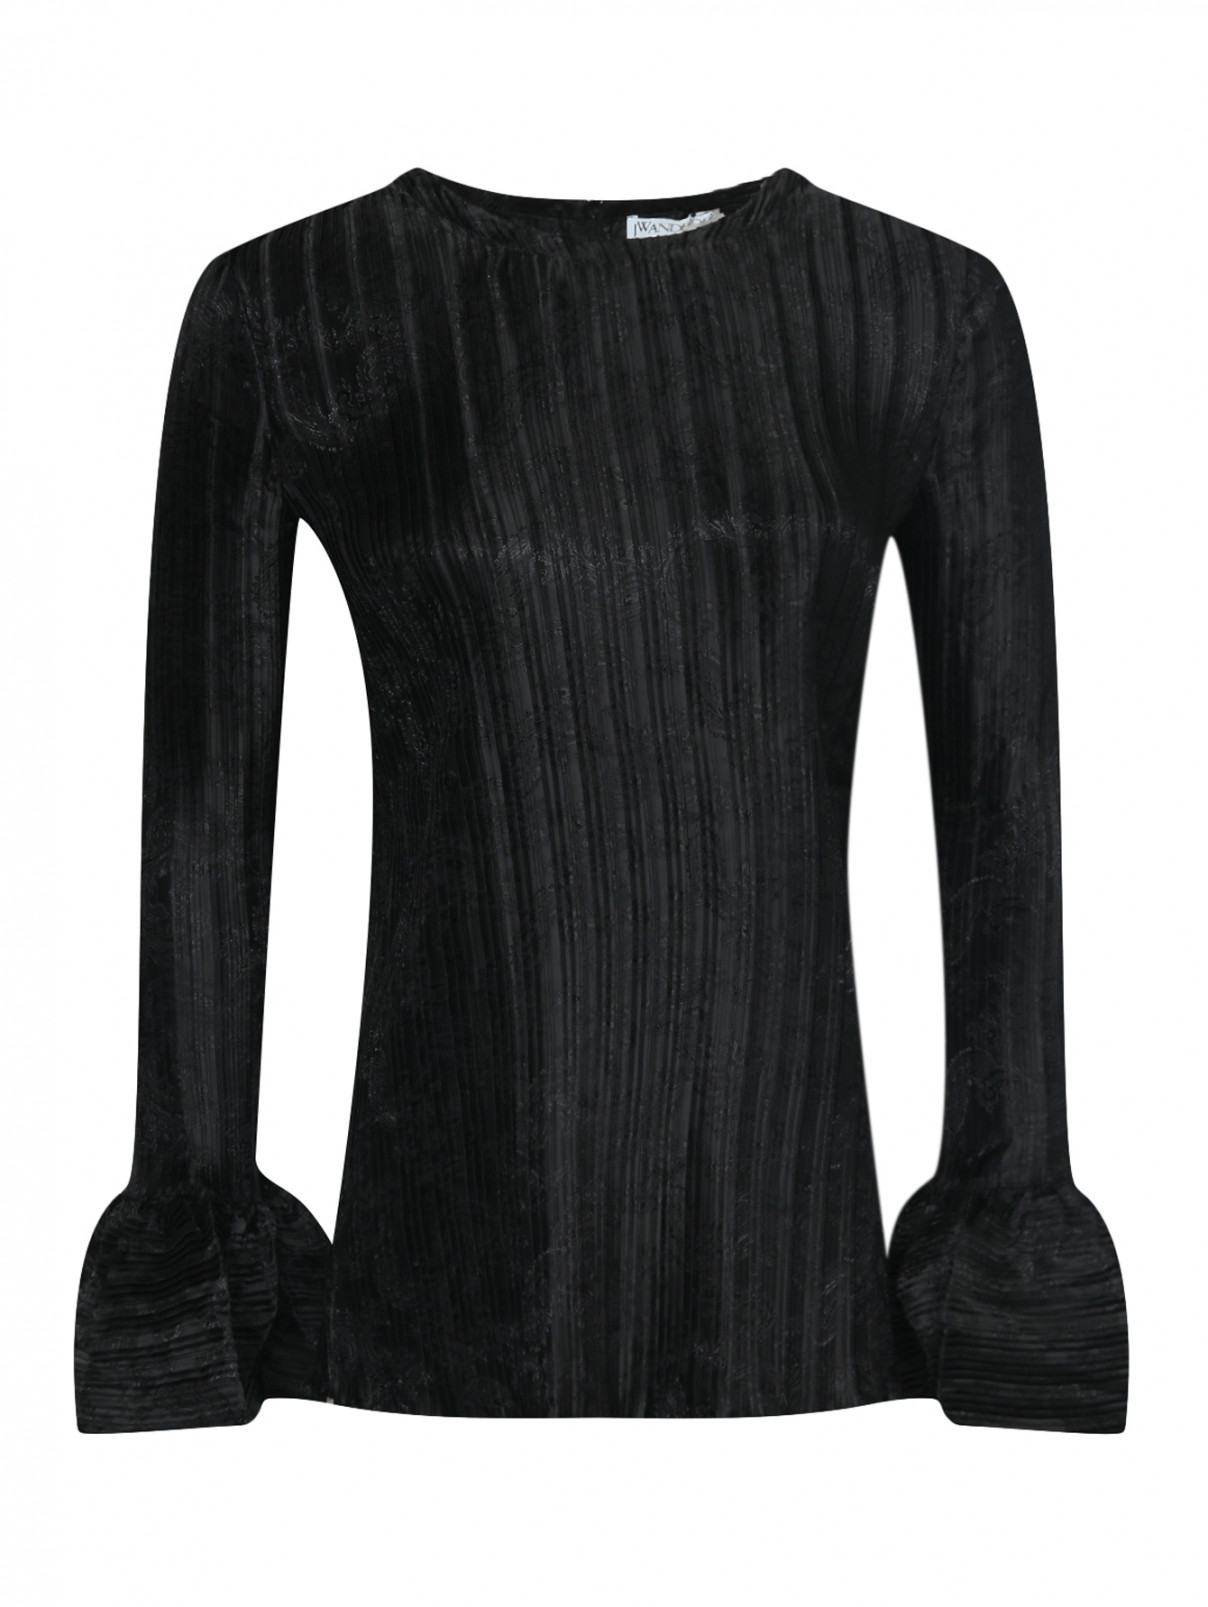 Блуза плиссированная с объемными рукавами J.W. Anderson  –  Общий вид  – Цвет:  Черный